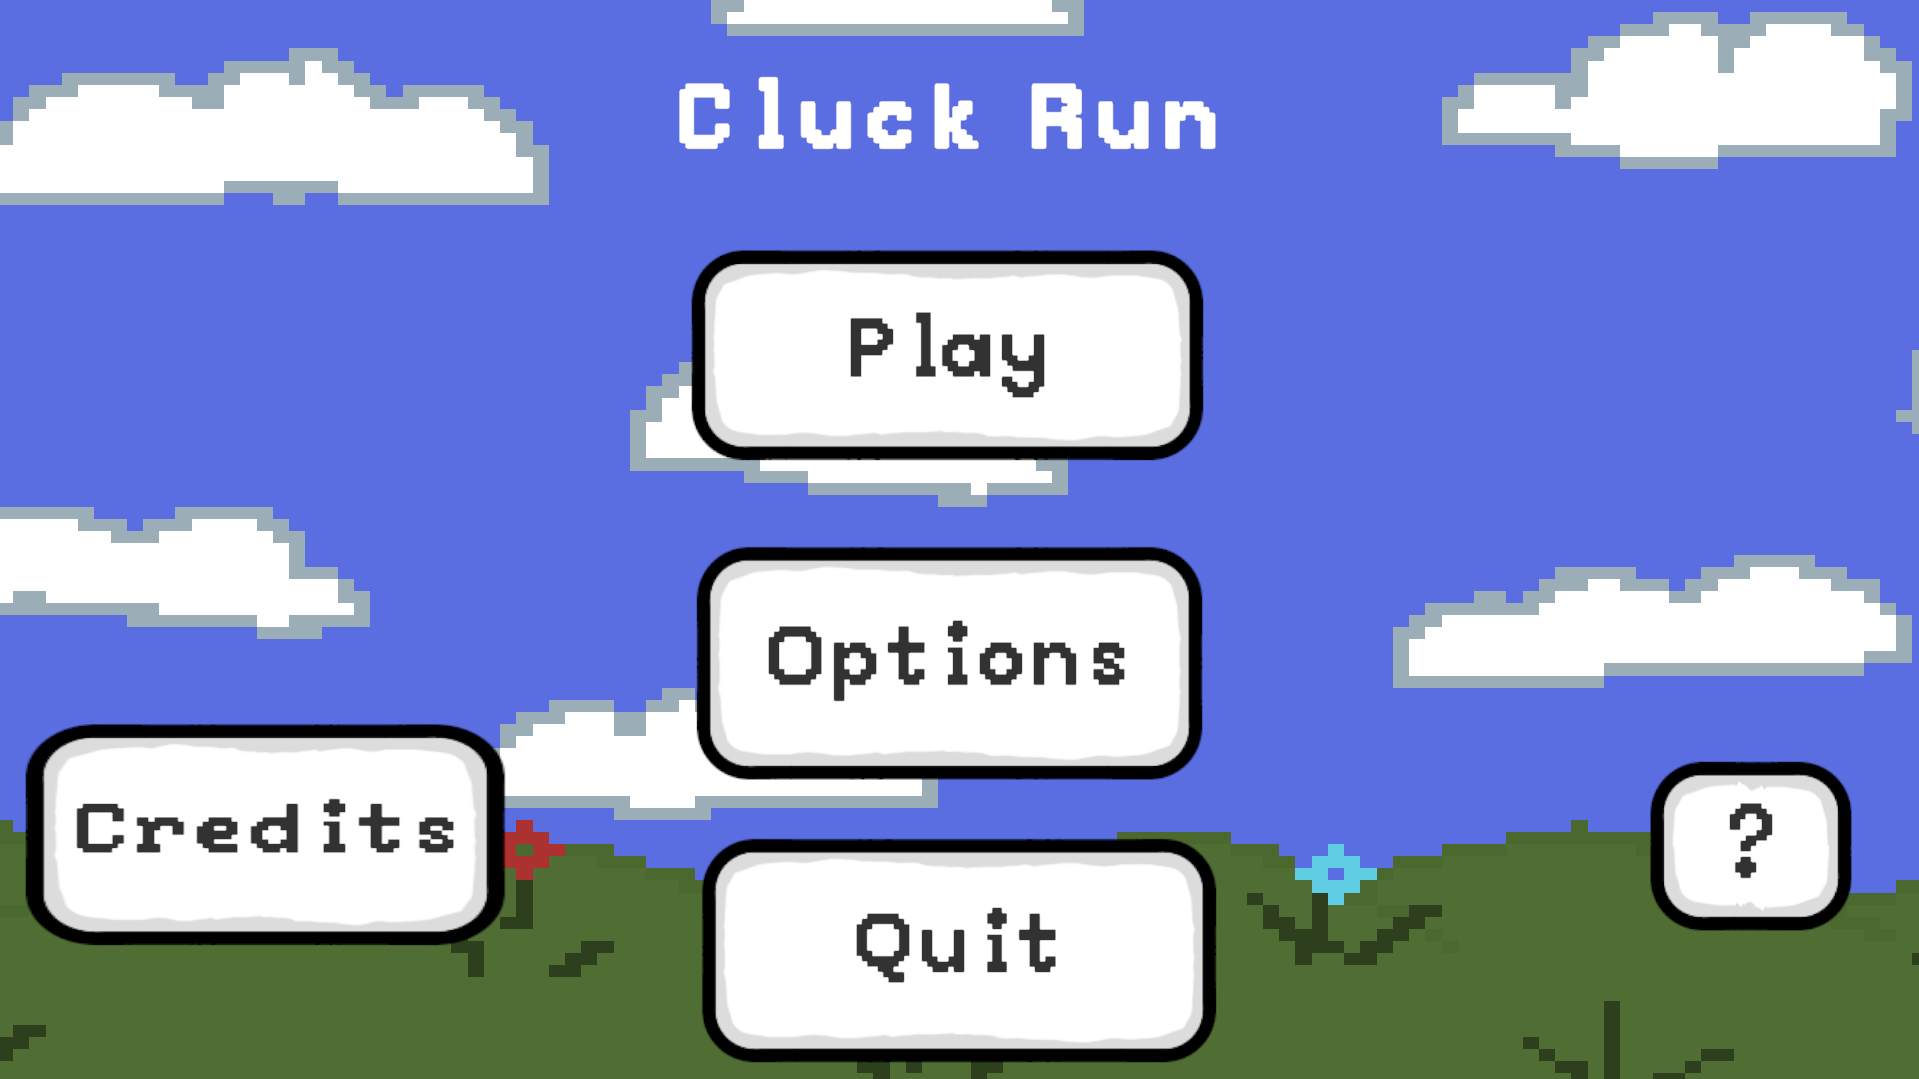 Cluck Run